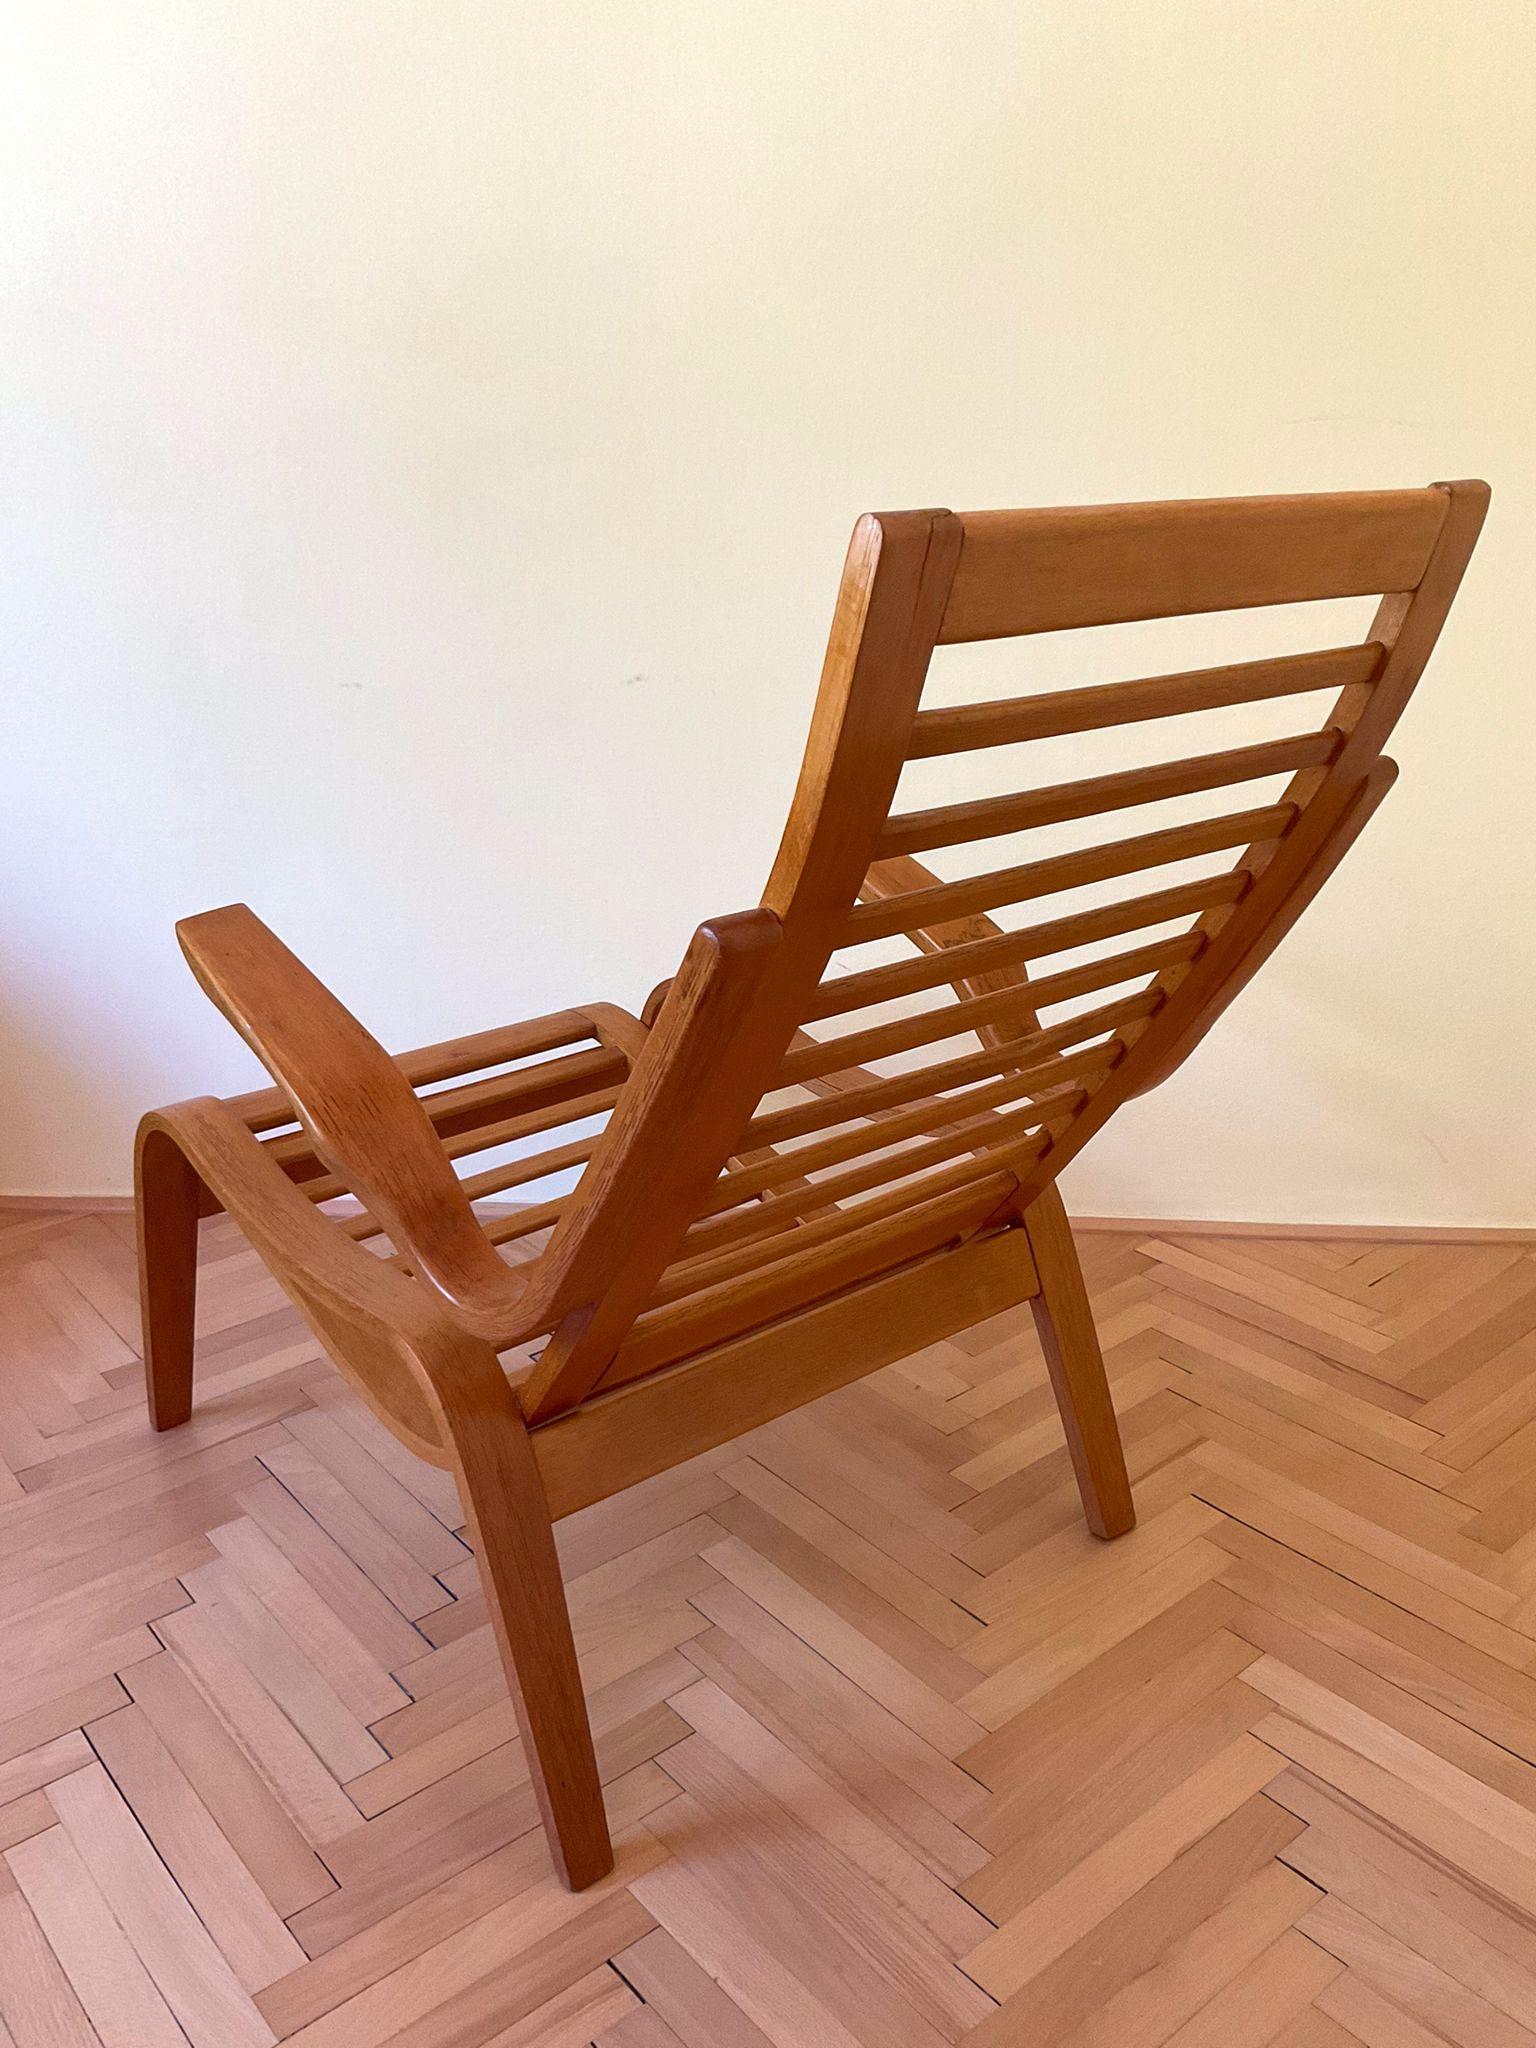 Dieser schöne Sessel aus Buchenbugholz von Jan Vanek ist eines seiner seltenen Modelle.
Idealer Wellness- und Entspannungssessel.
Der Sessel wurde vollständig restauriert. Wir haben ein weiteres Stück auf Anfrage.